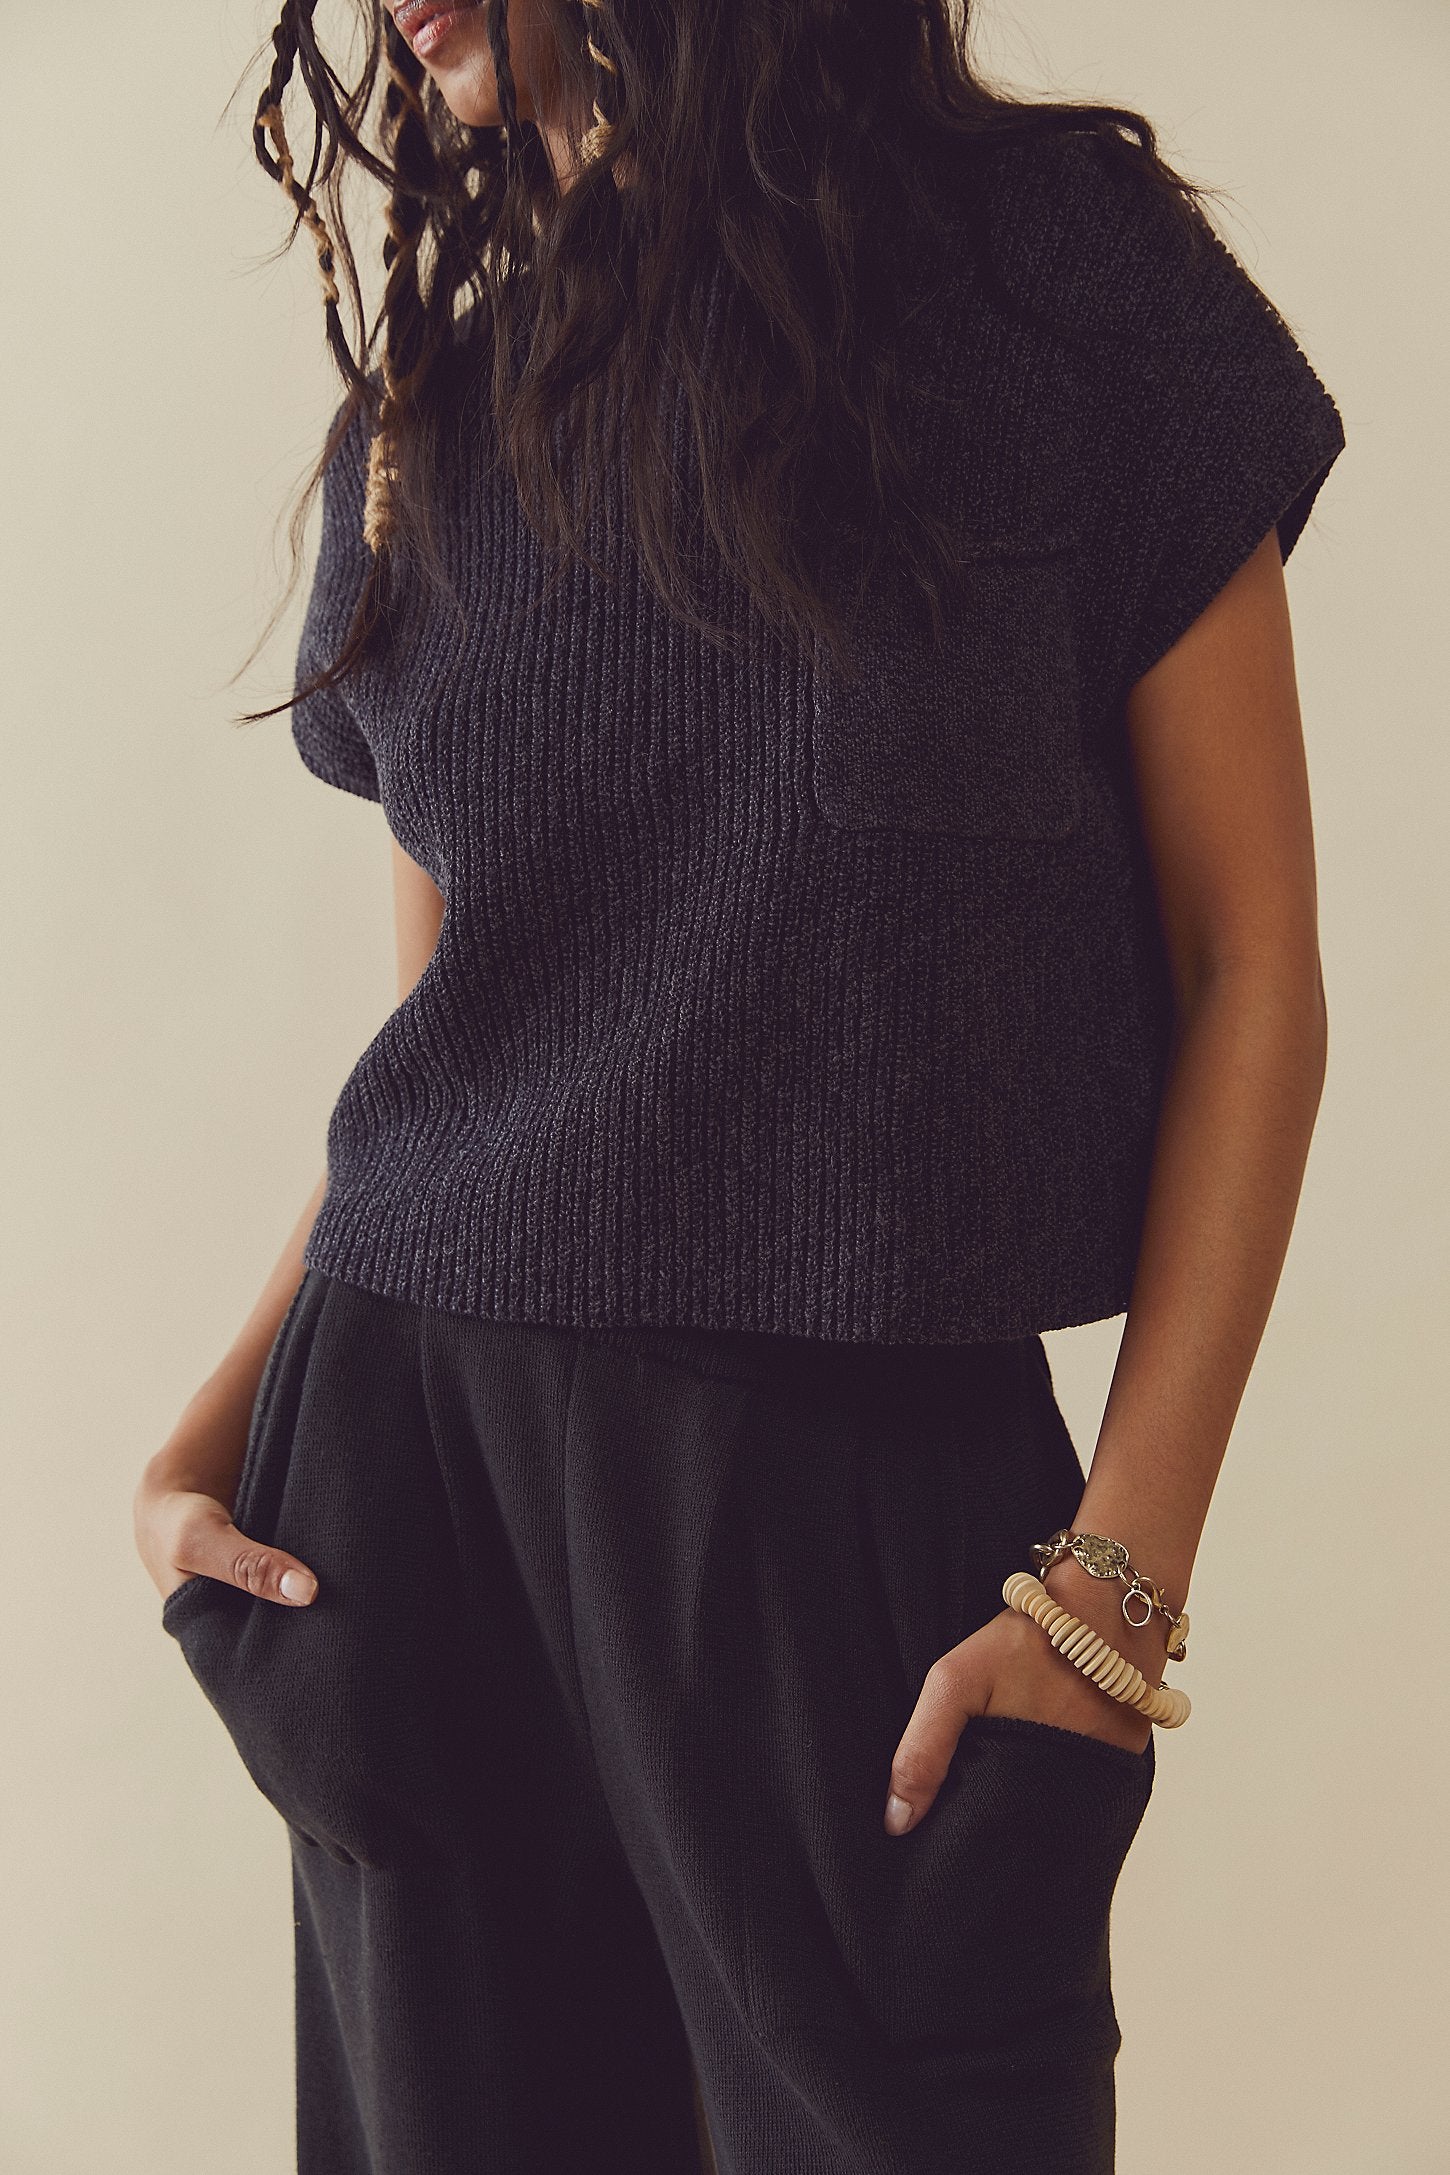 Freya Sweater Set- Black Charcoal Combo